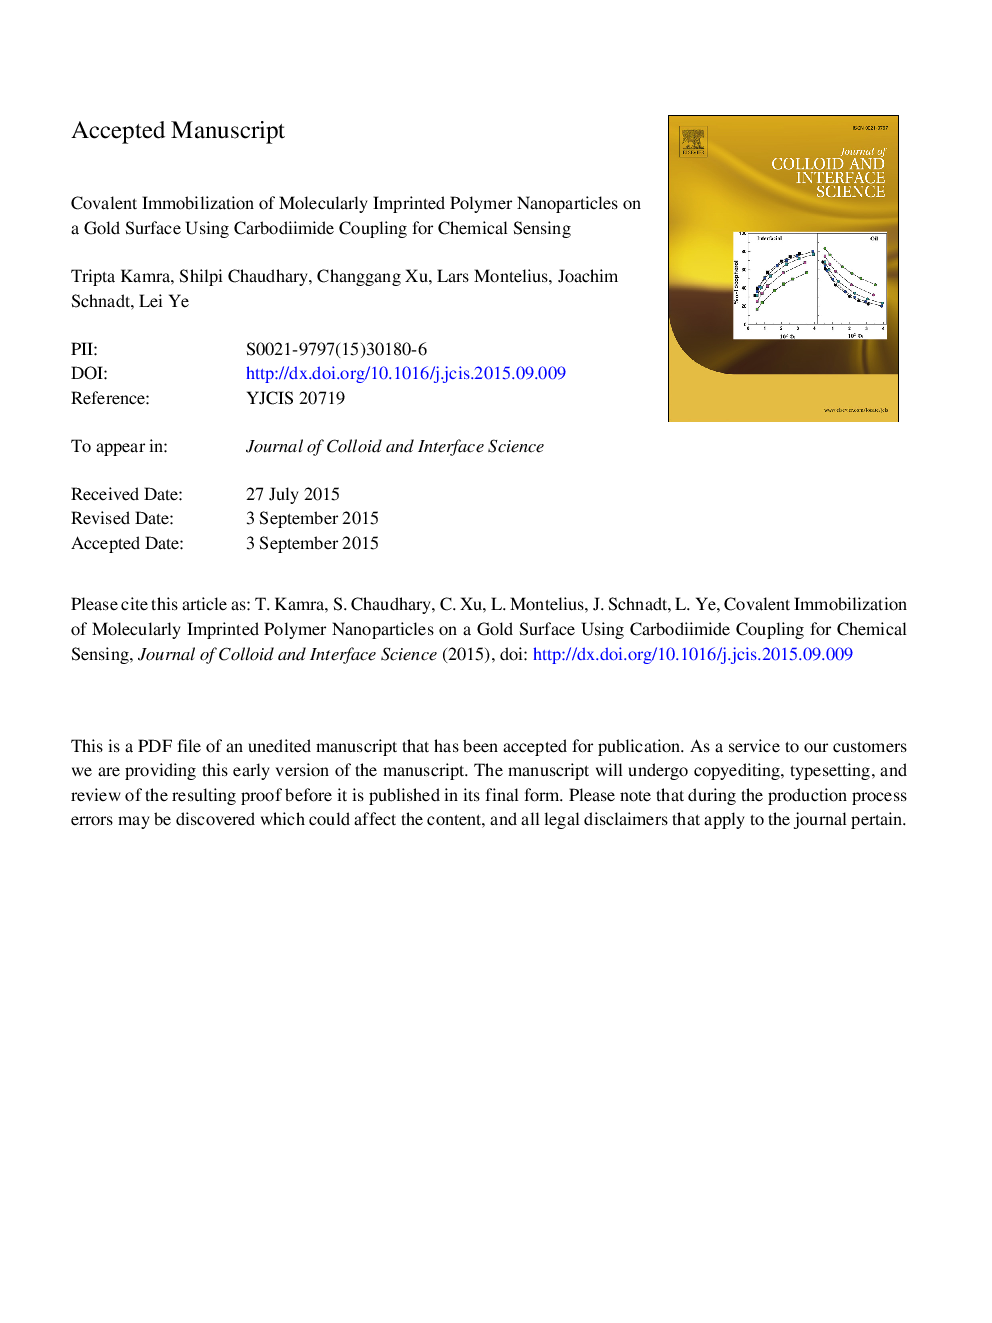 بی حرکت شدن کووالانسی از نانوذرات پلیمری مولکولی بر روی یک سطح طلا با استفاده از اتصال کربوودییمید برای حساسیت شیمیایی 